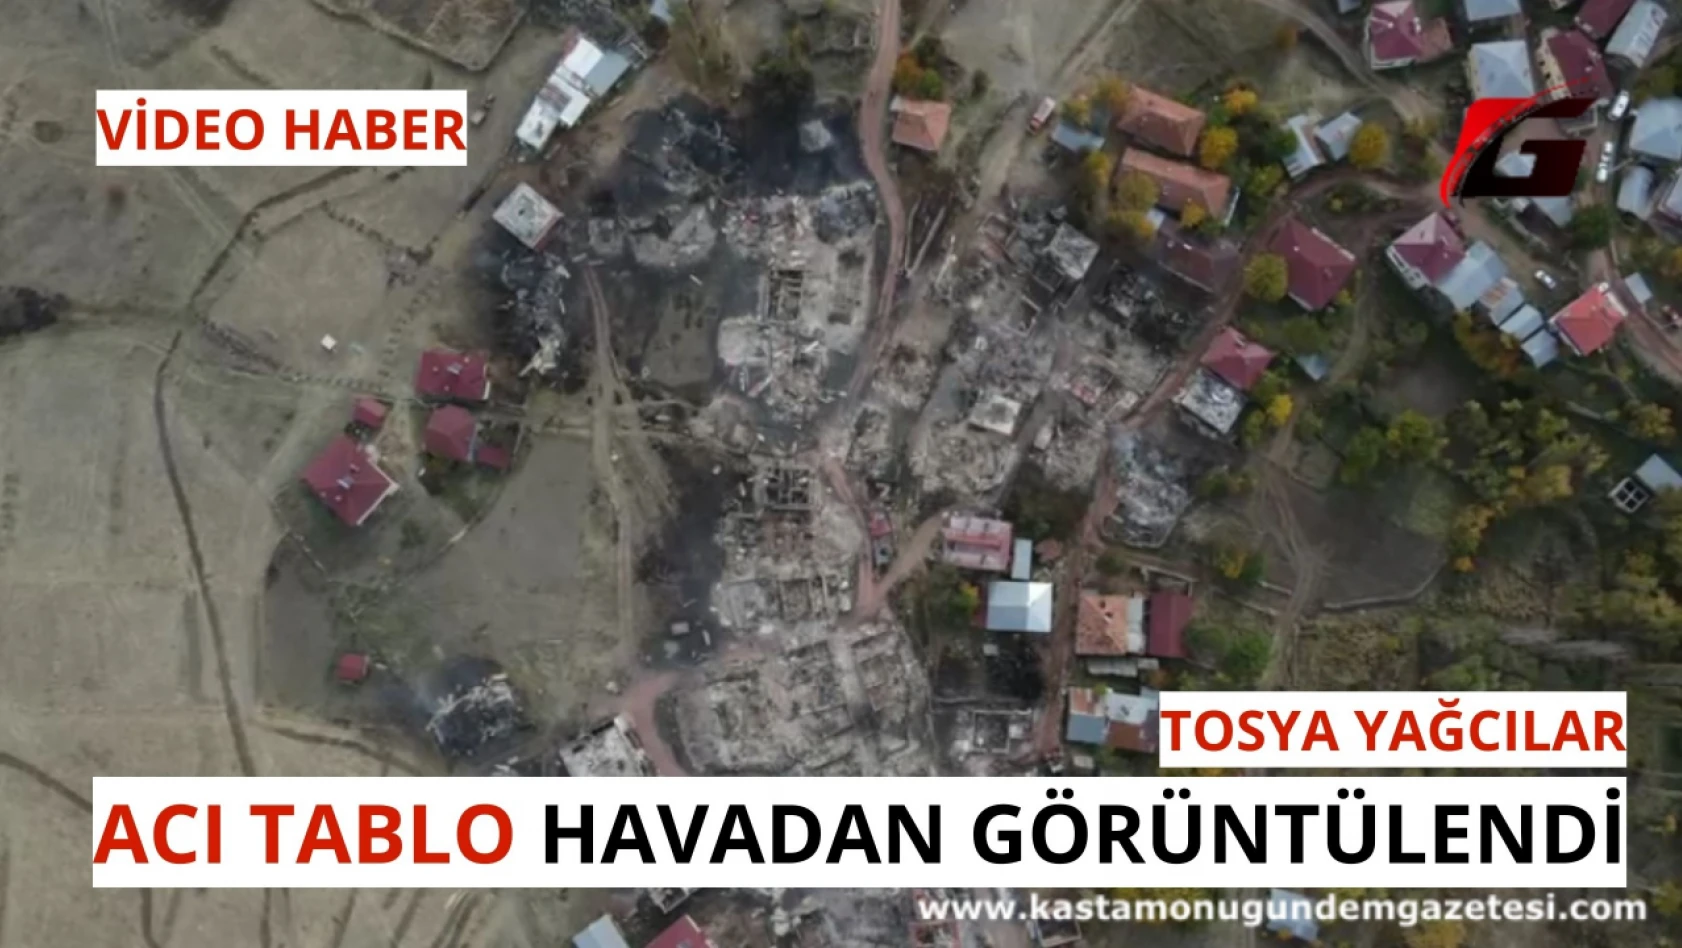 Tosya Yağcılar'da acı tablo! Sabah havadan drone ile görüntülendi